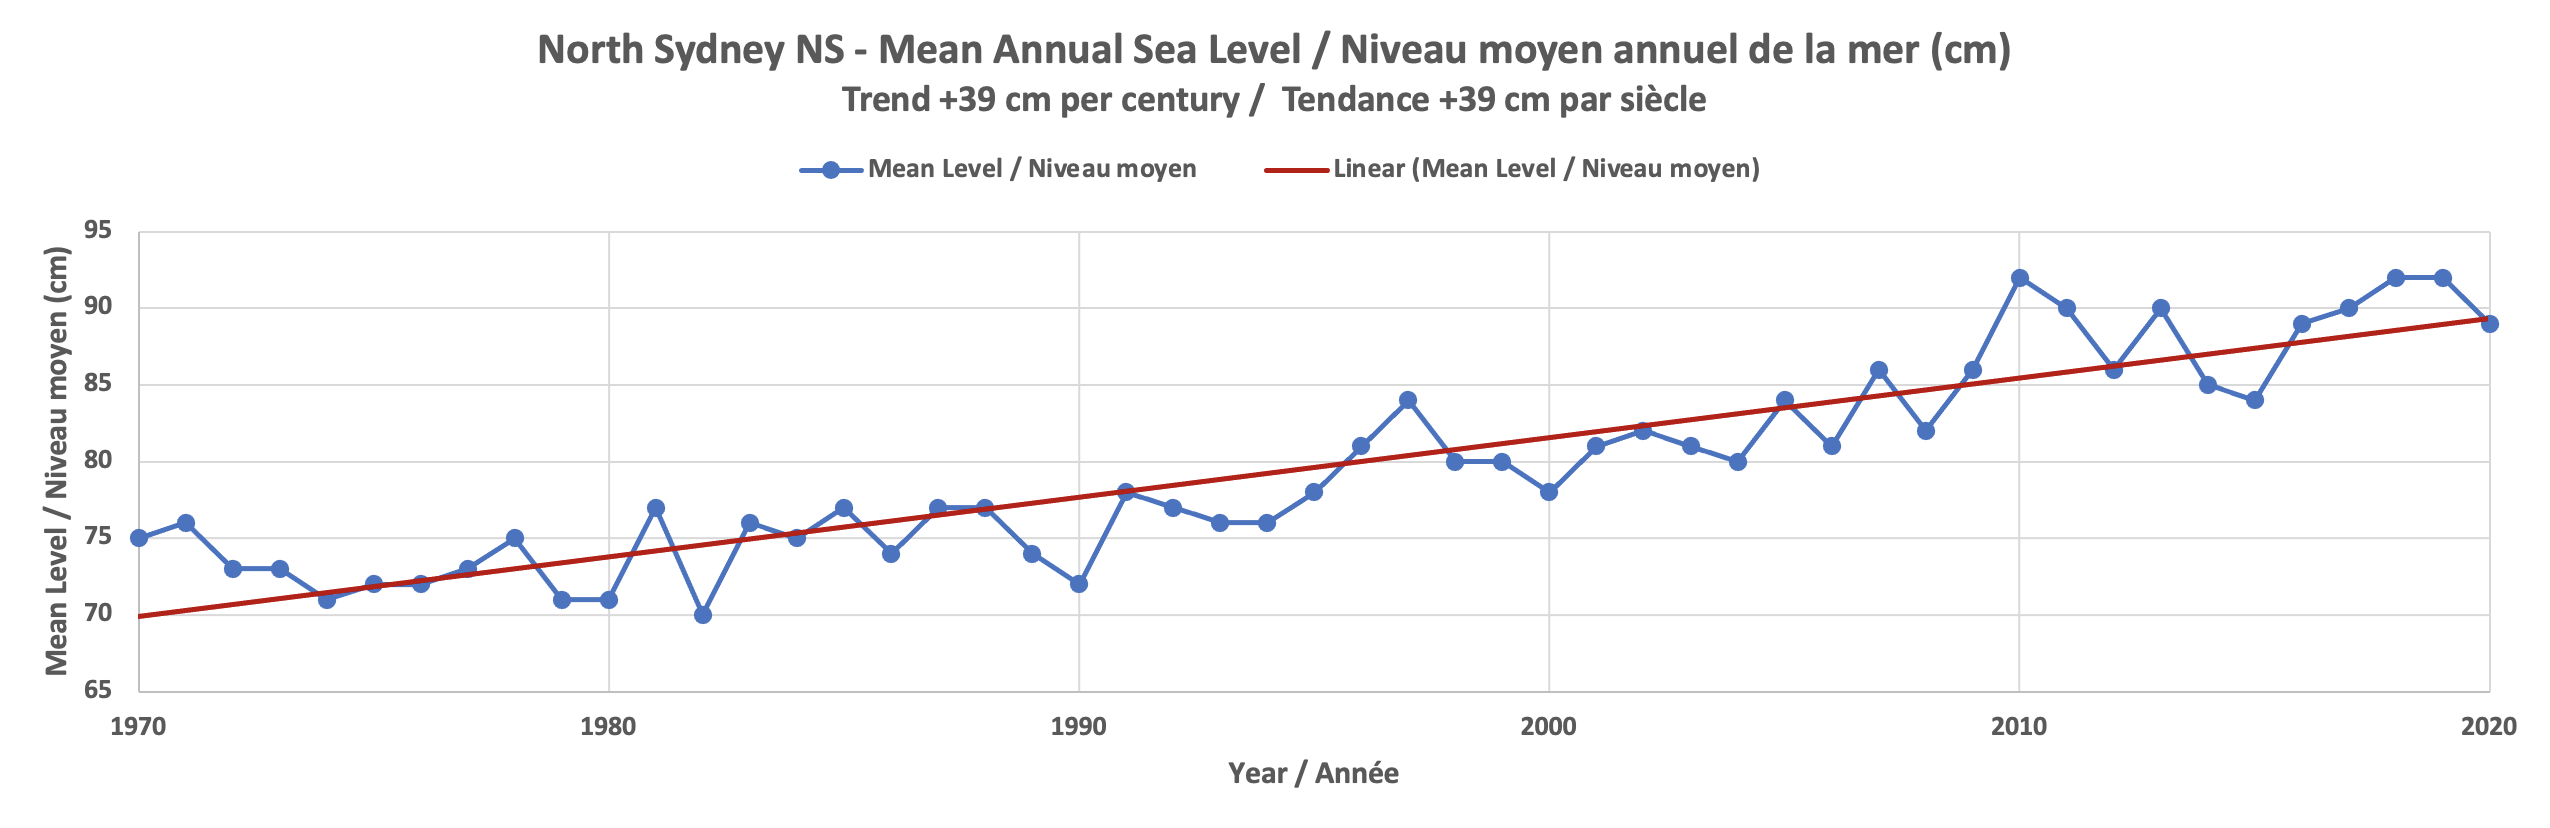 Un graphique titré "North Sydney NS - Niveau moyen annuel de la mer, Tendance +40 cm par siècle". Le graphique montre les années 1971-2021 et présente une tendance à la hausse.